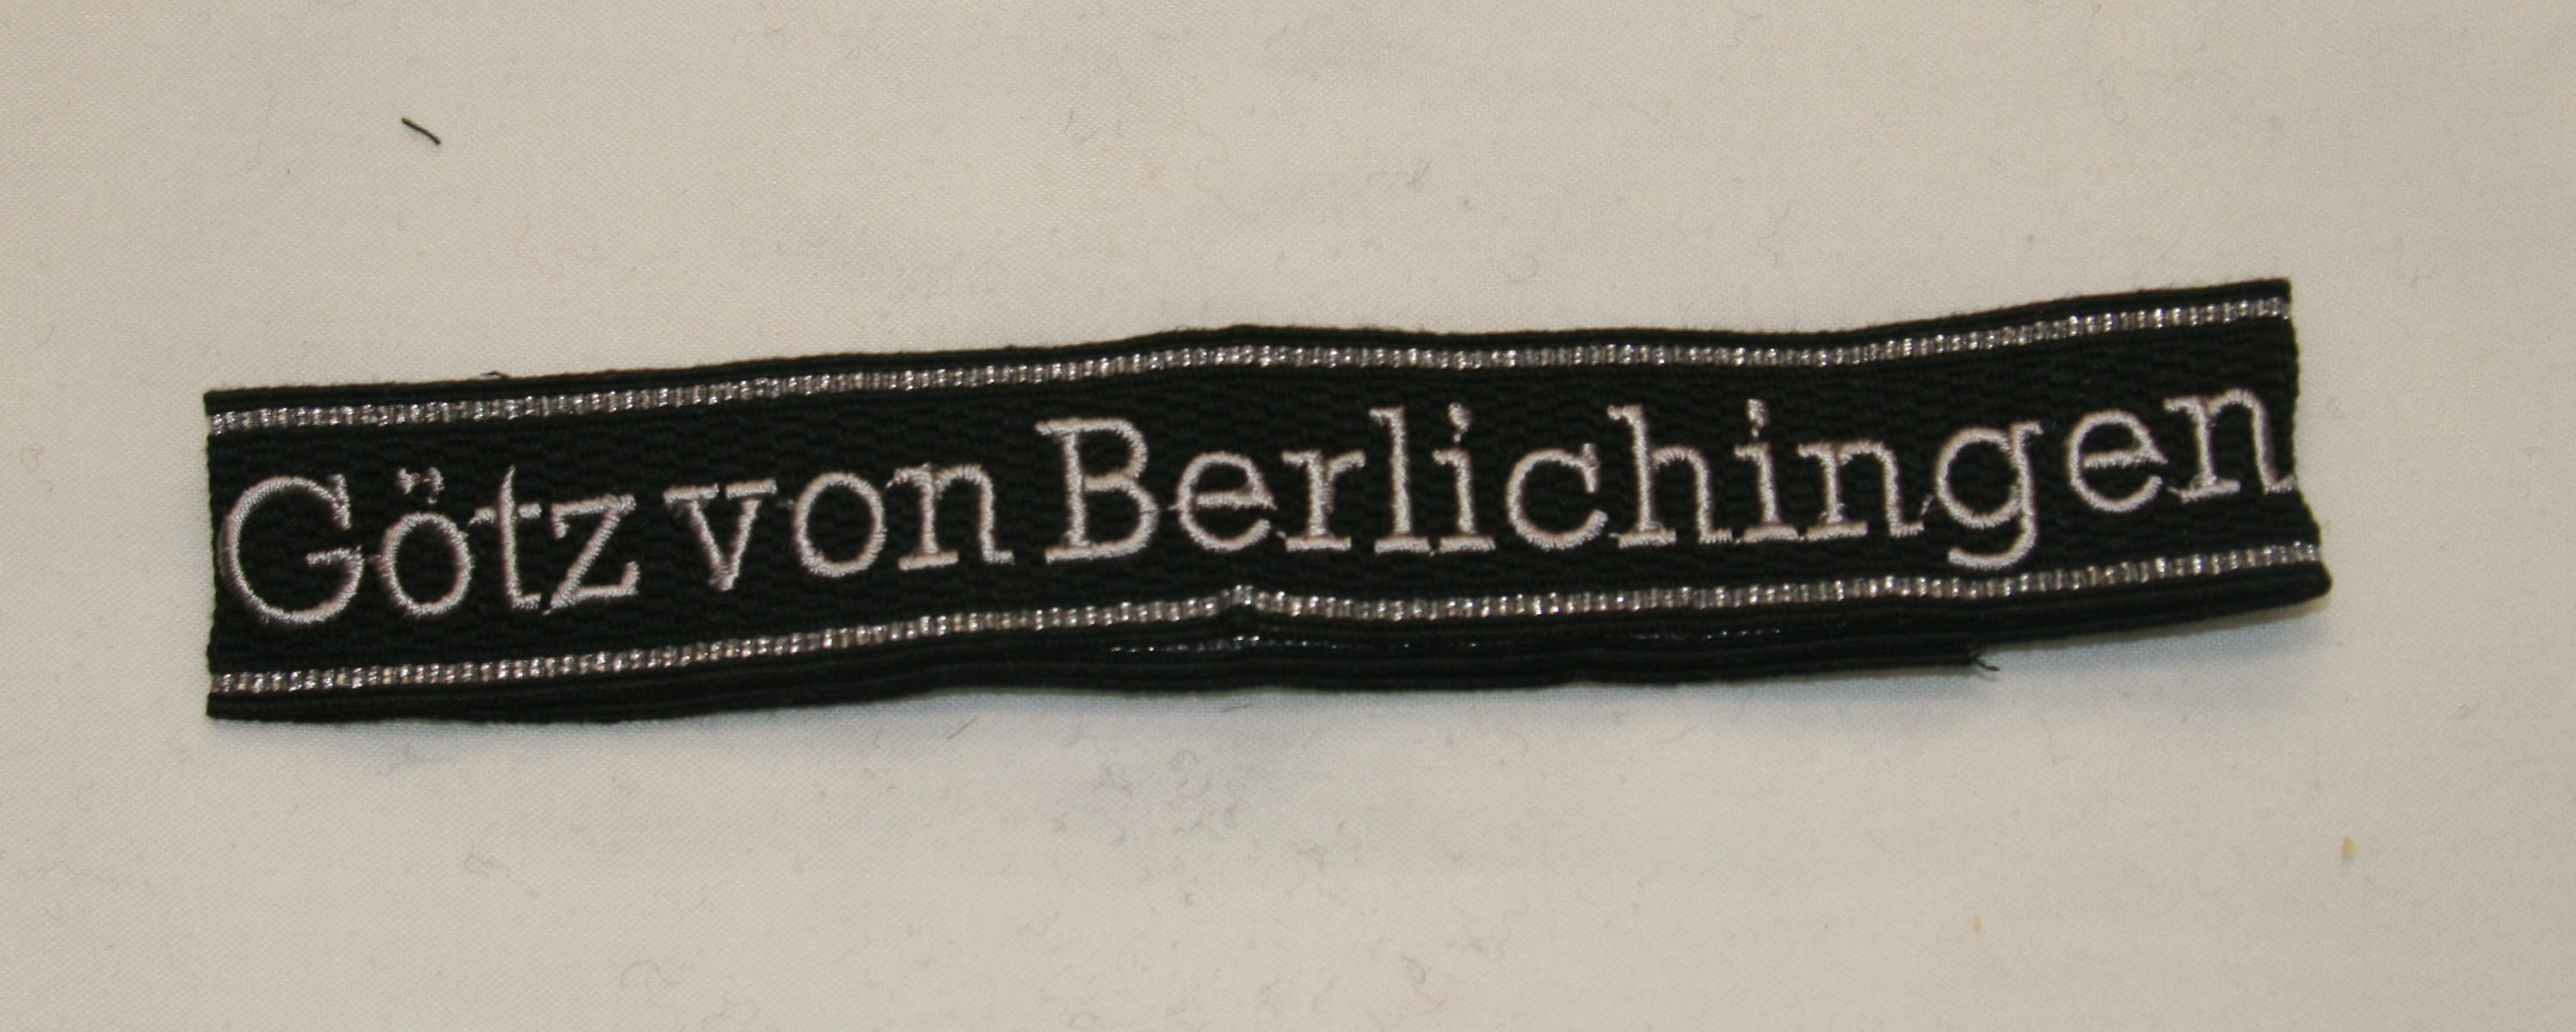 Waffen SS Divisional Cuff Title, Gotz von Berlichingen embroidered